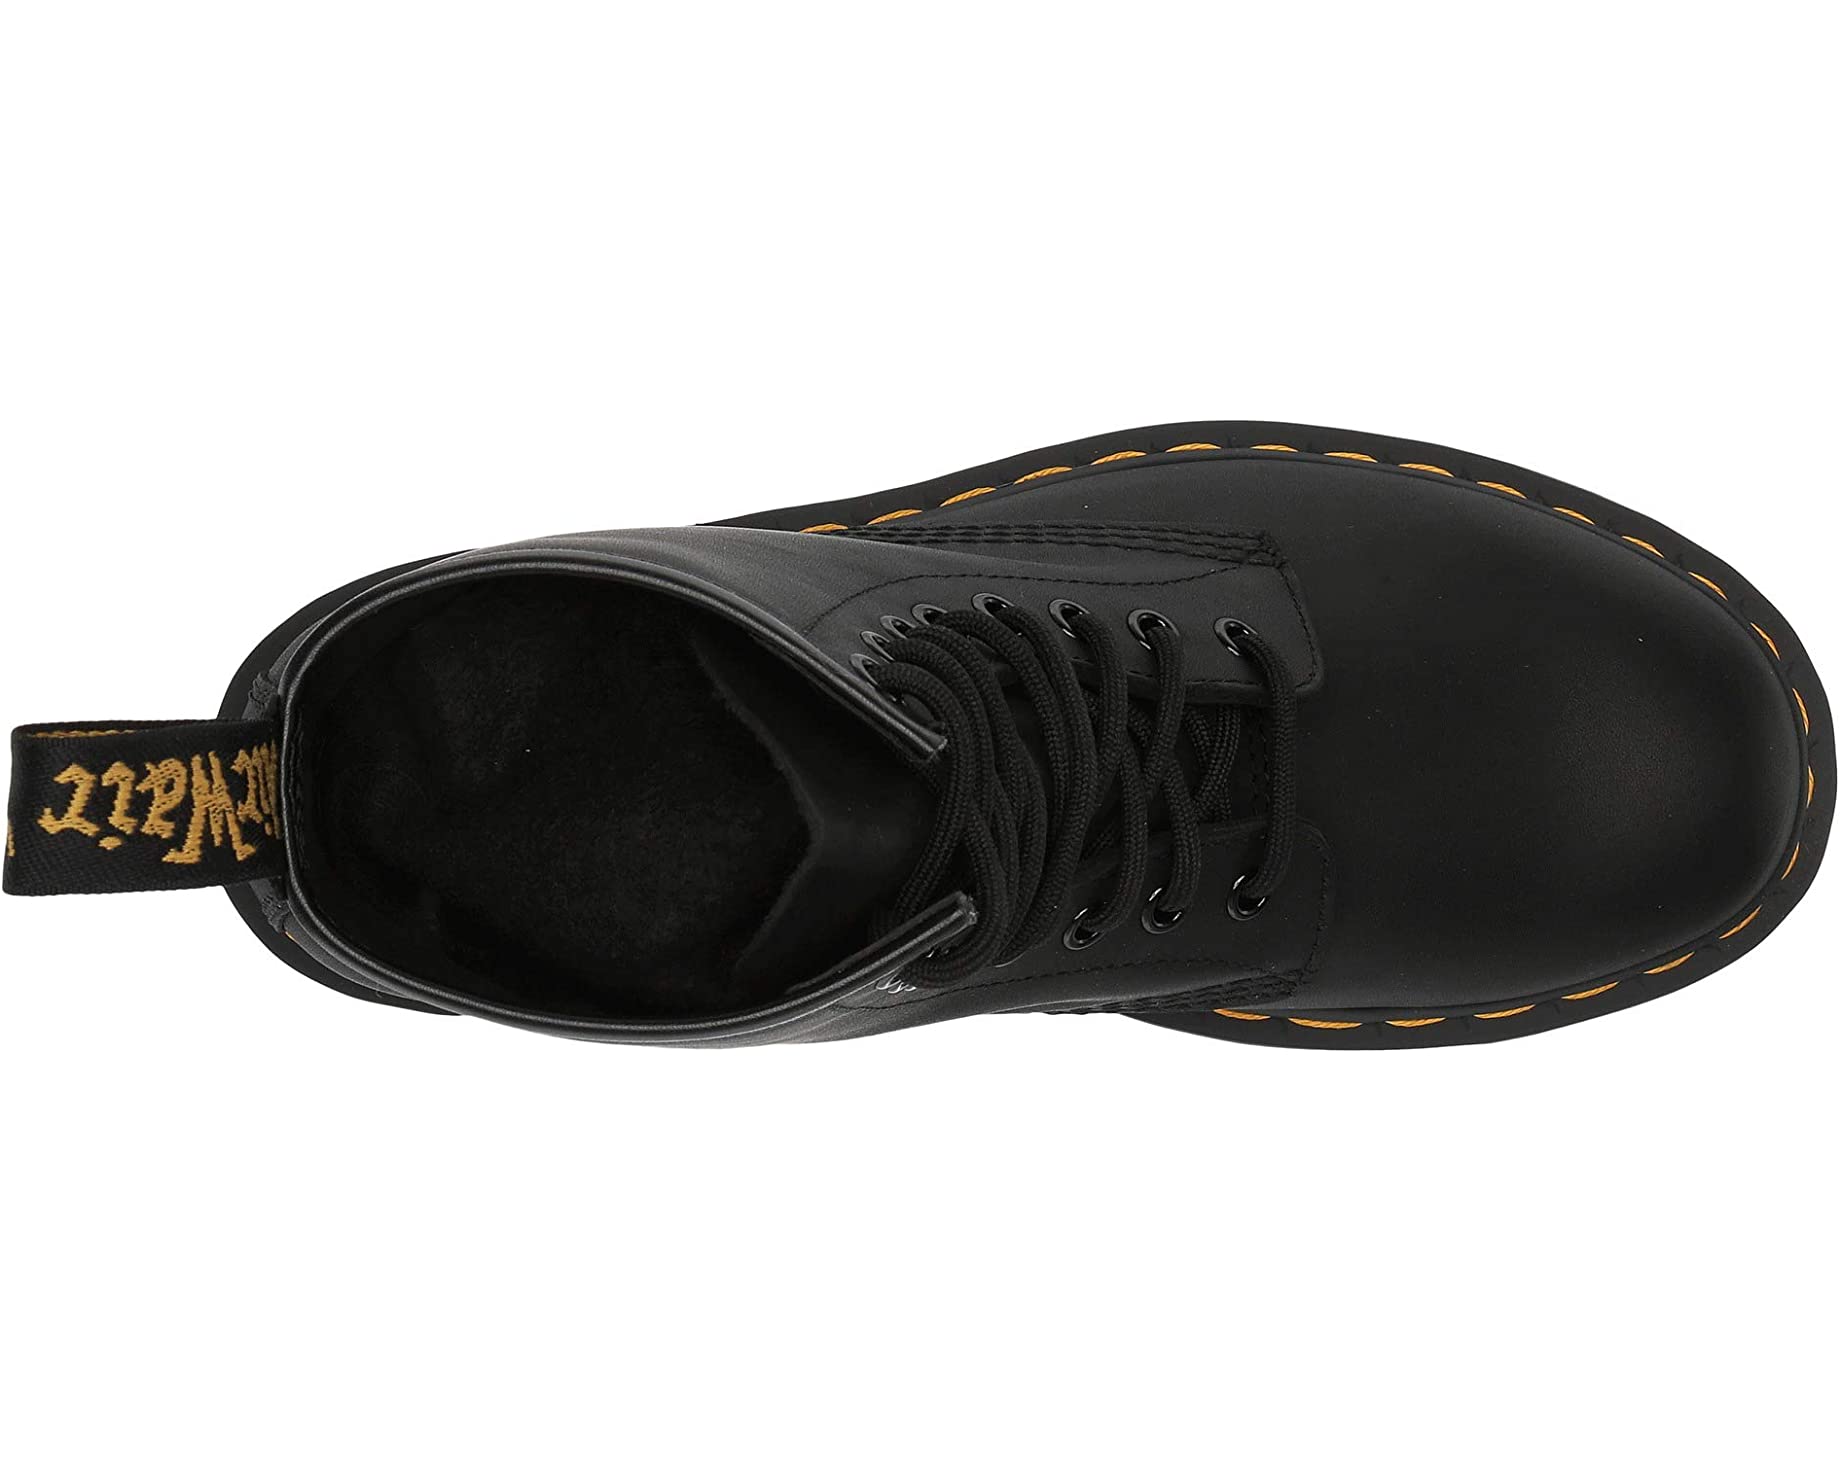 Ботинки 1460 Greasy Leather Boot Dr. Martens, черный ботинки dr martens 1460 nappa standard 11822002 кожаные высокие классика черные 40